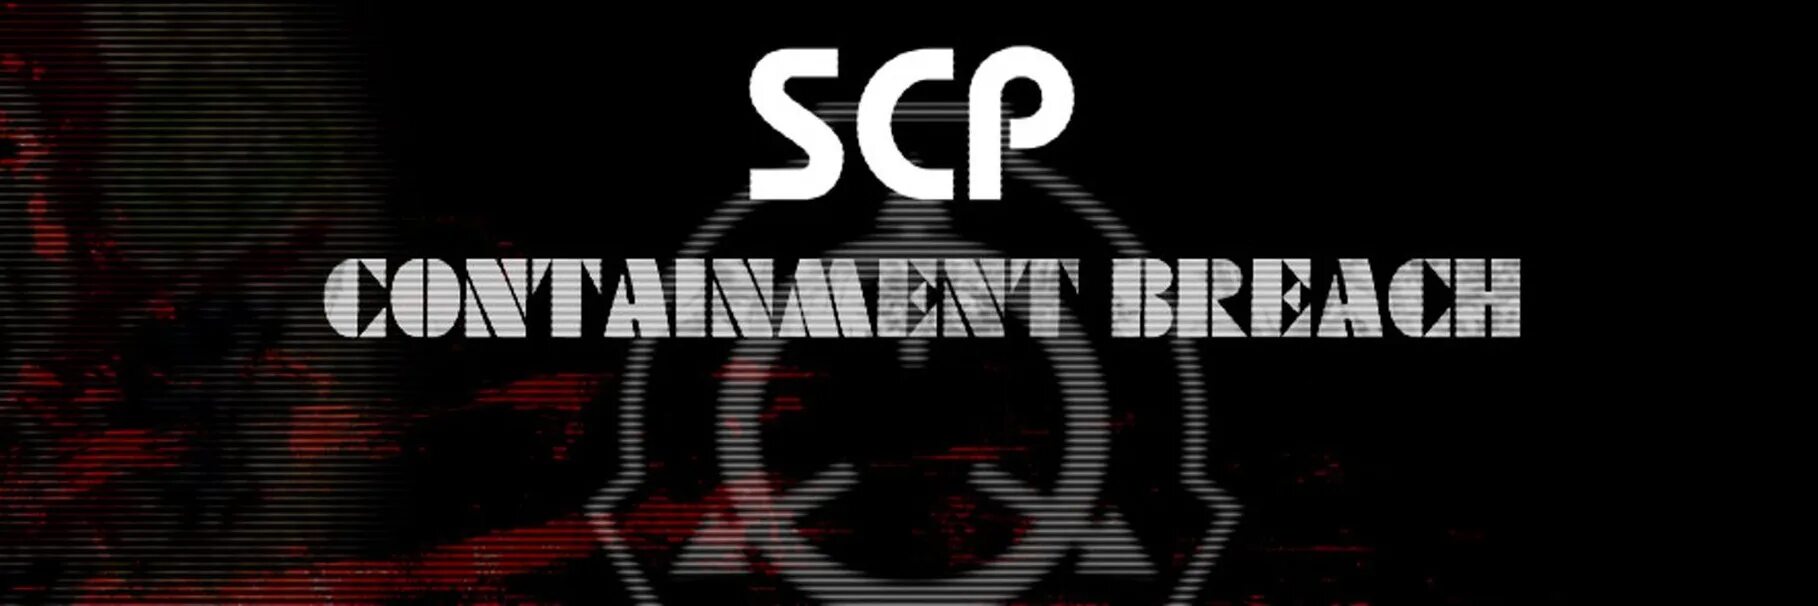 Scp фраза. SCP обложка. SCP логотип. Логотип фонда SCP.